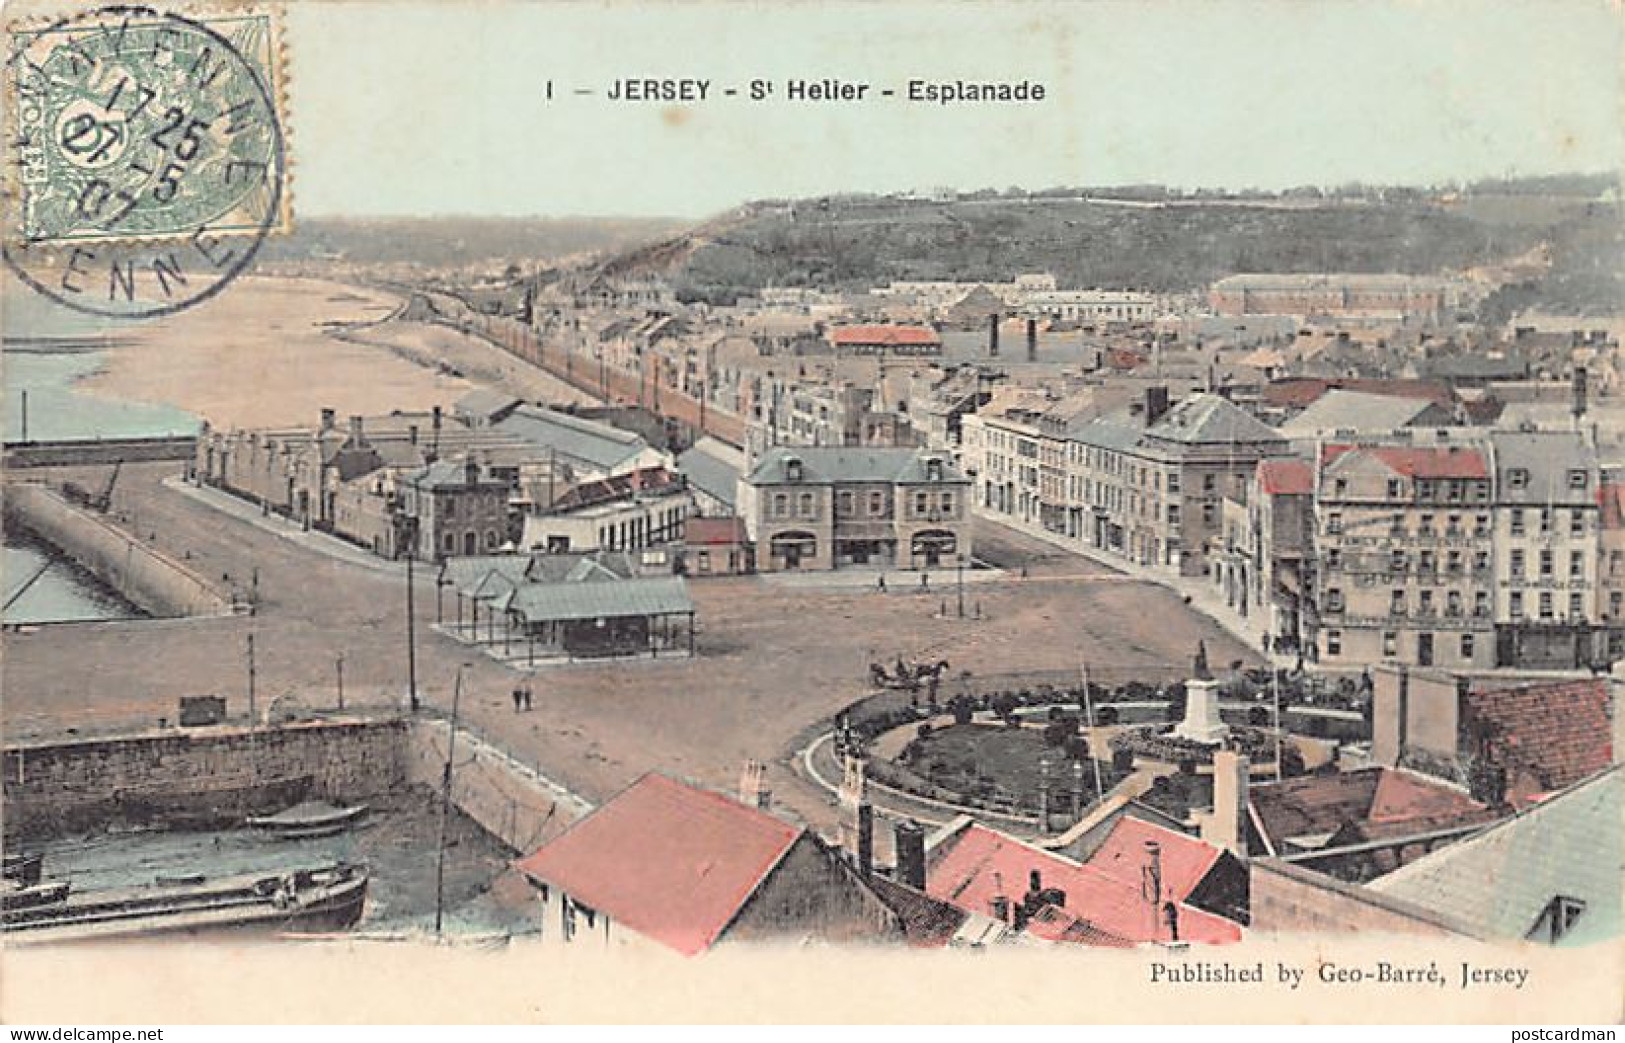 Jersey - SAINT-HELIER - Esplanade - Publ. Geo-Barré 1 - St. Helier